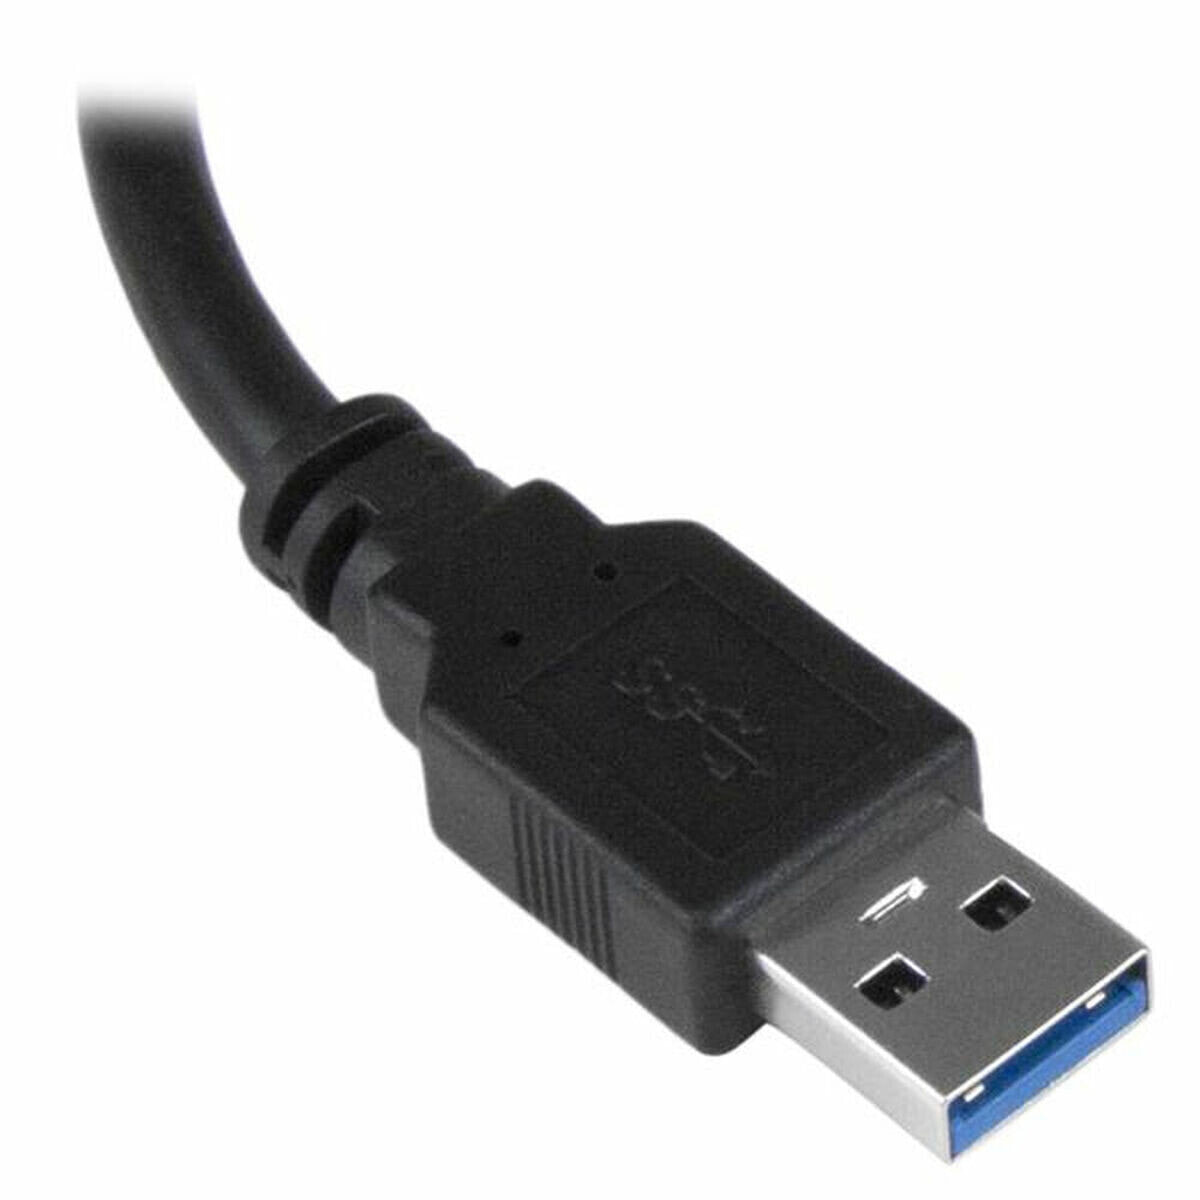 Переходник usb 3.0 купить. Переходники USB 3.0 to VGA. USB 2.0 to VGA Adapter Driver. ВГА переходник на юсб 2.0. Fl2000 USB display Adapter.